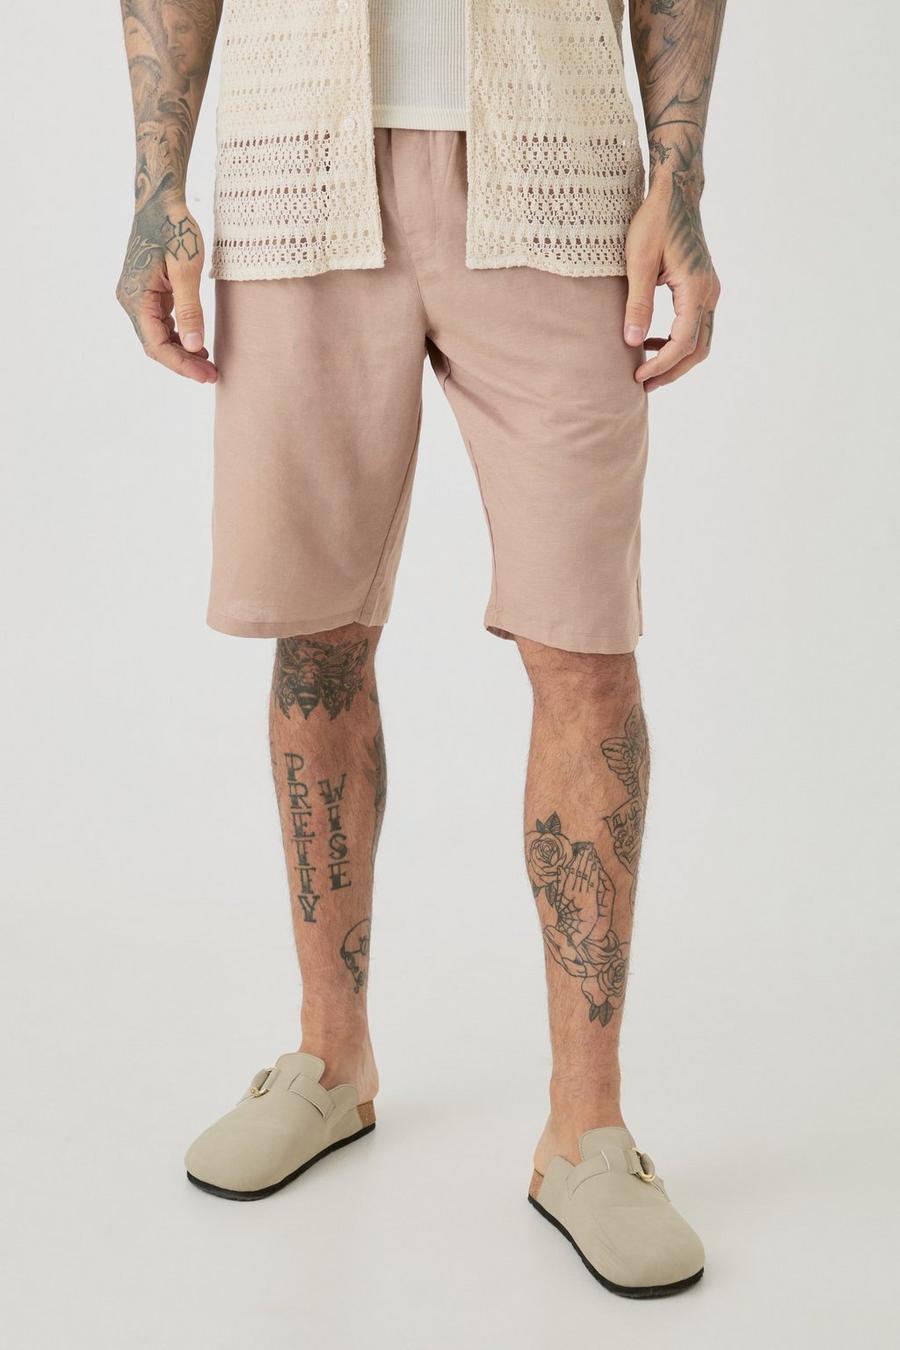 Pantalones cortos Tall cómodos de lino con cintura elástica en color topo, Taupe image number 1